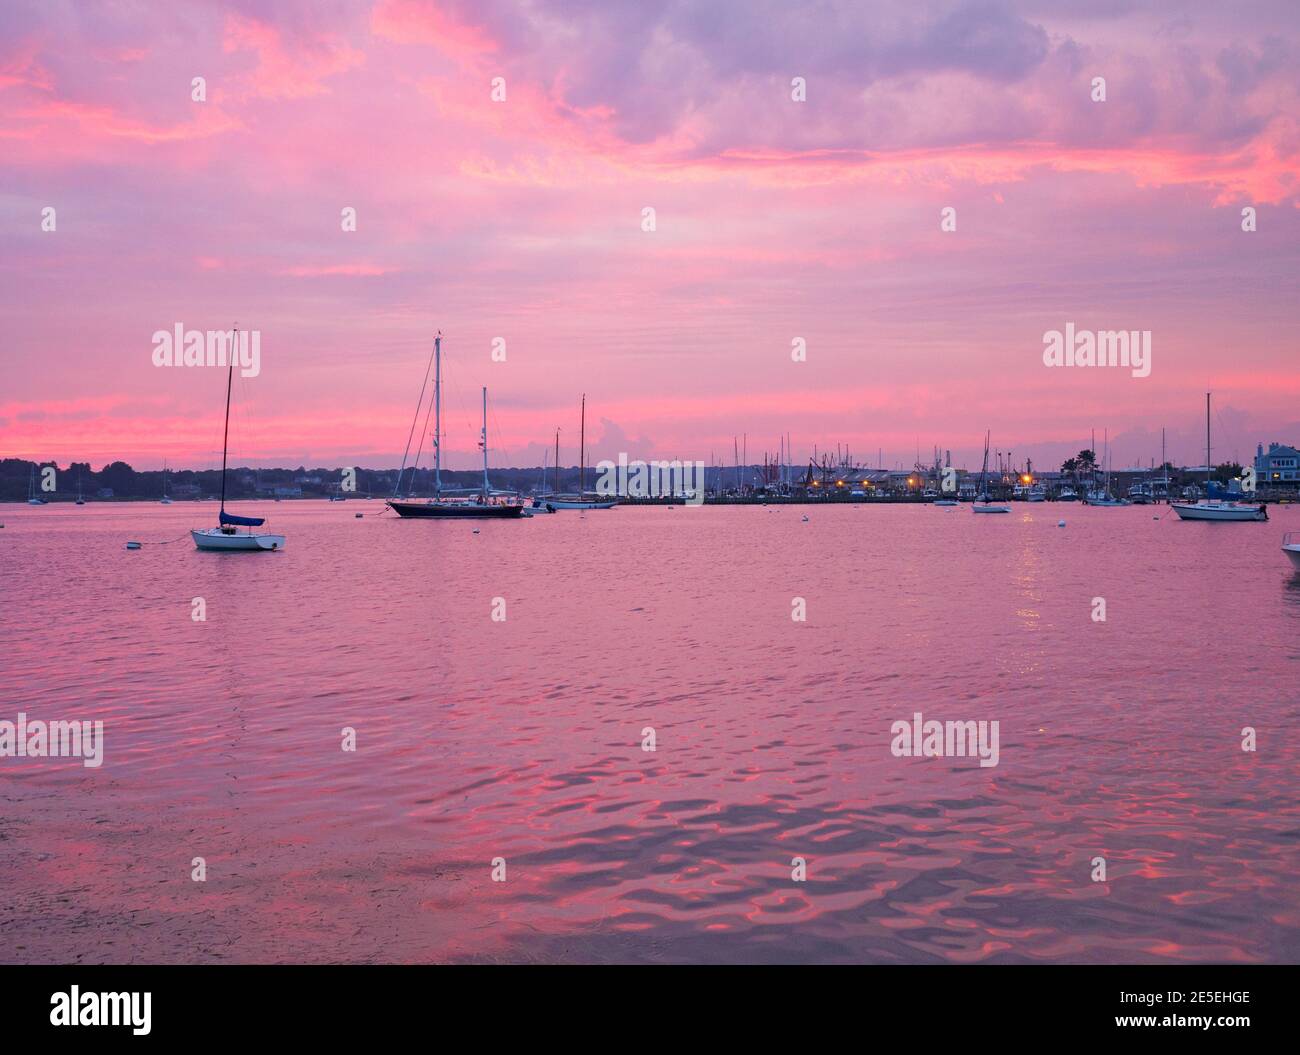 Voiliers dans le port à l'heure bleue juste après le coucher du soleil avec des nuages roses et pourpres dans le ciel et l'eau pourpre, Stonington, Connecticut USA. Stoningto Banque D'Images